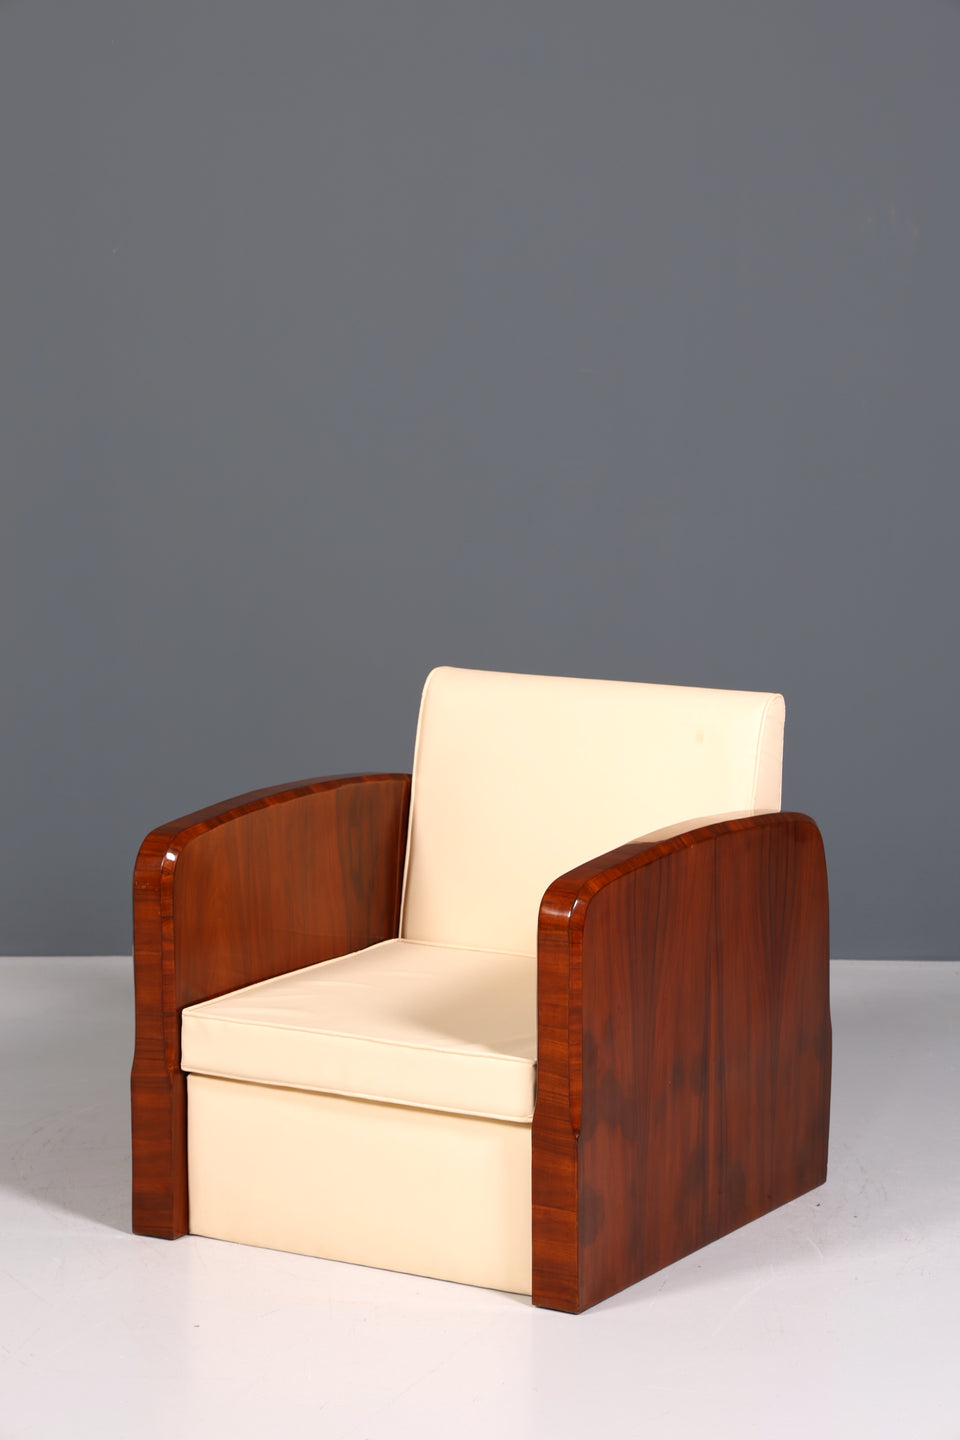 Wunderschöner Art Deco Design Sessel Clubsessel Armlehnsessel 2 von 2